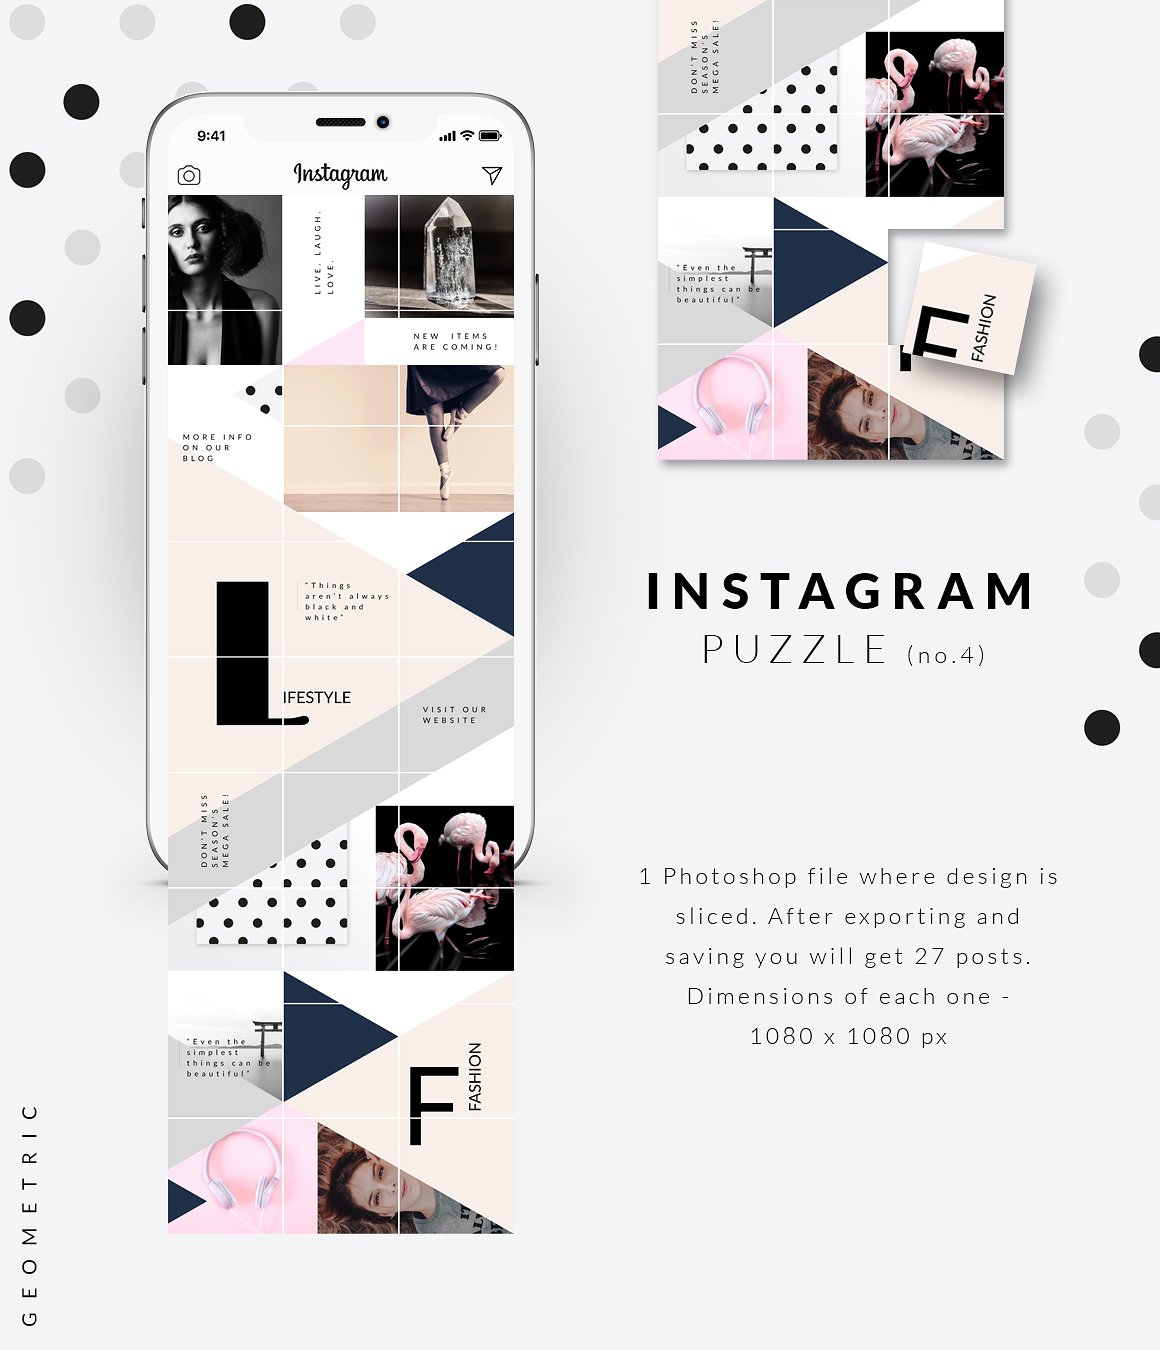 时尚高端几何形状布局的Instagram模板第一素材精选 Instagram PUZZLE template -Geometric [psd]插图(4)